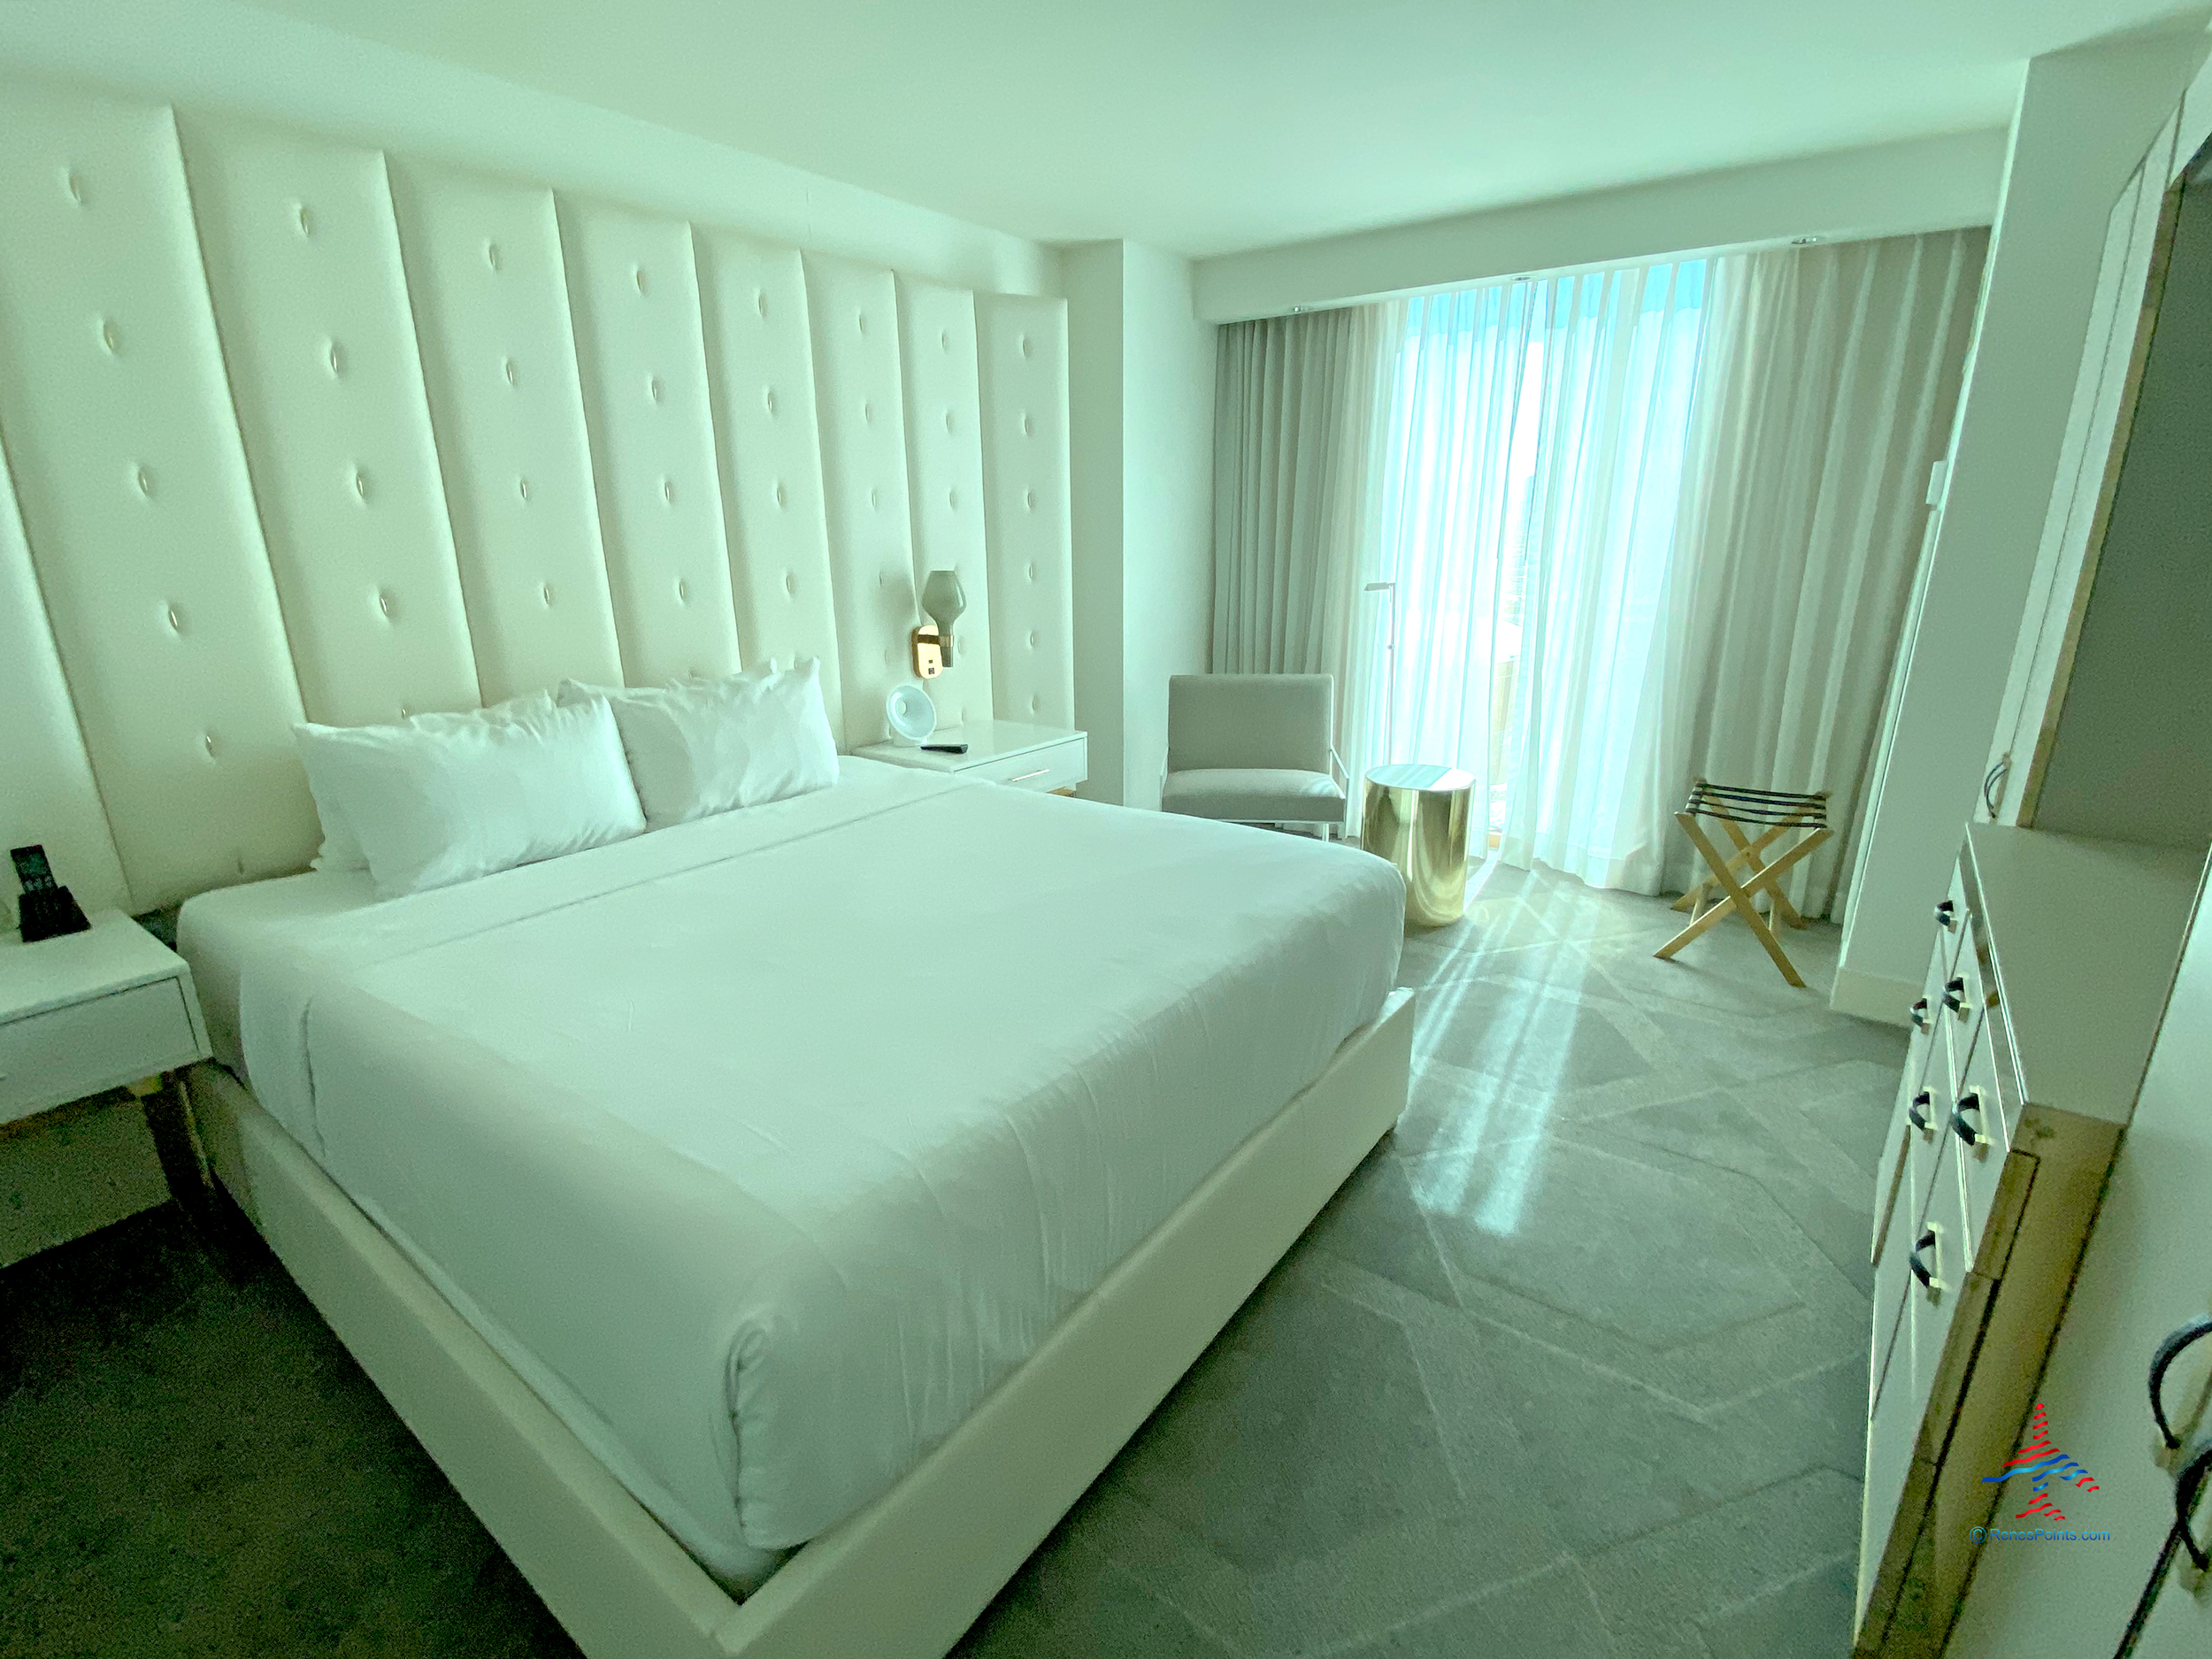 2 Queen beds - Picture of Paris Las Vegas, Paradise - Tripadvisor